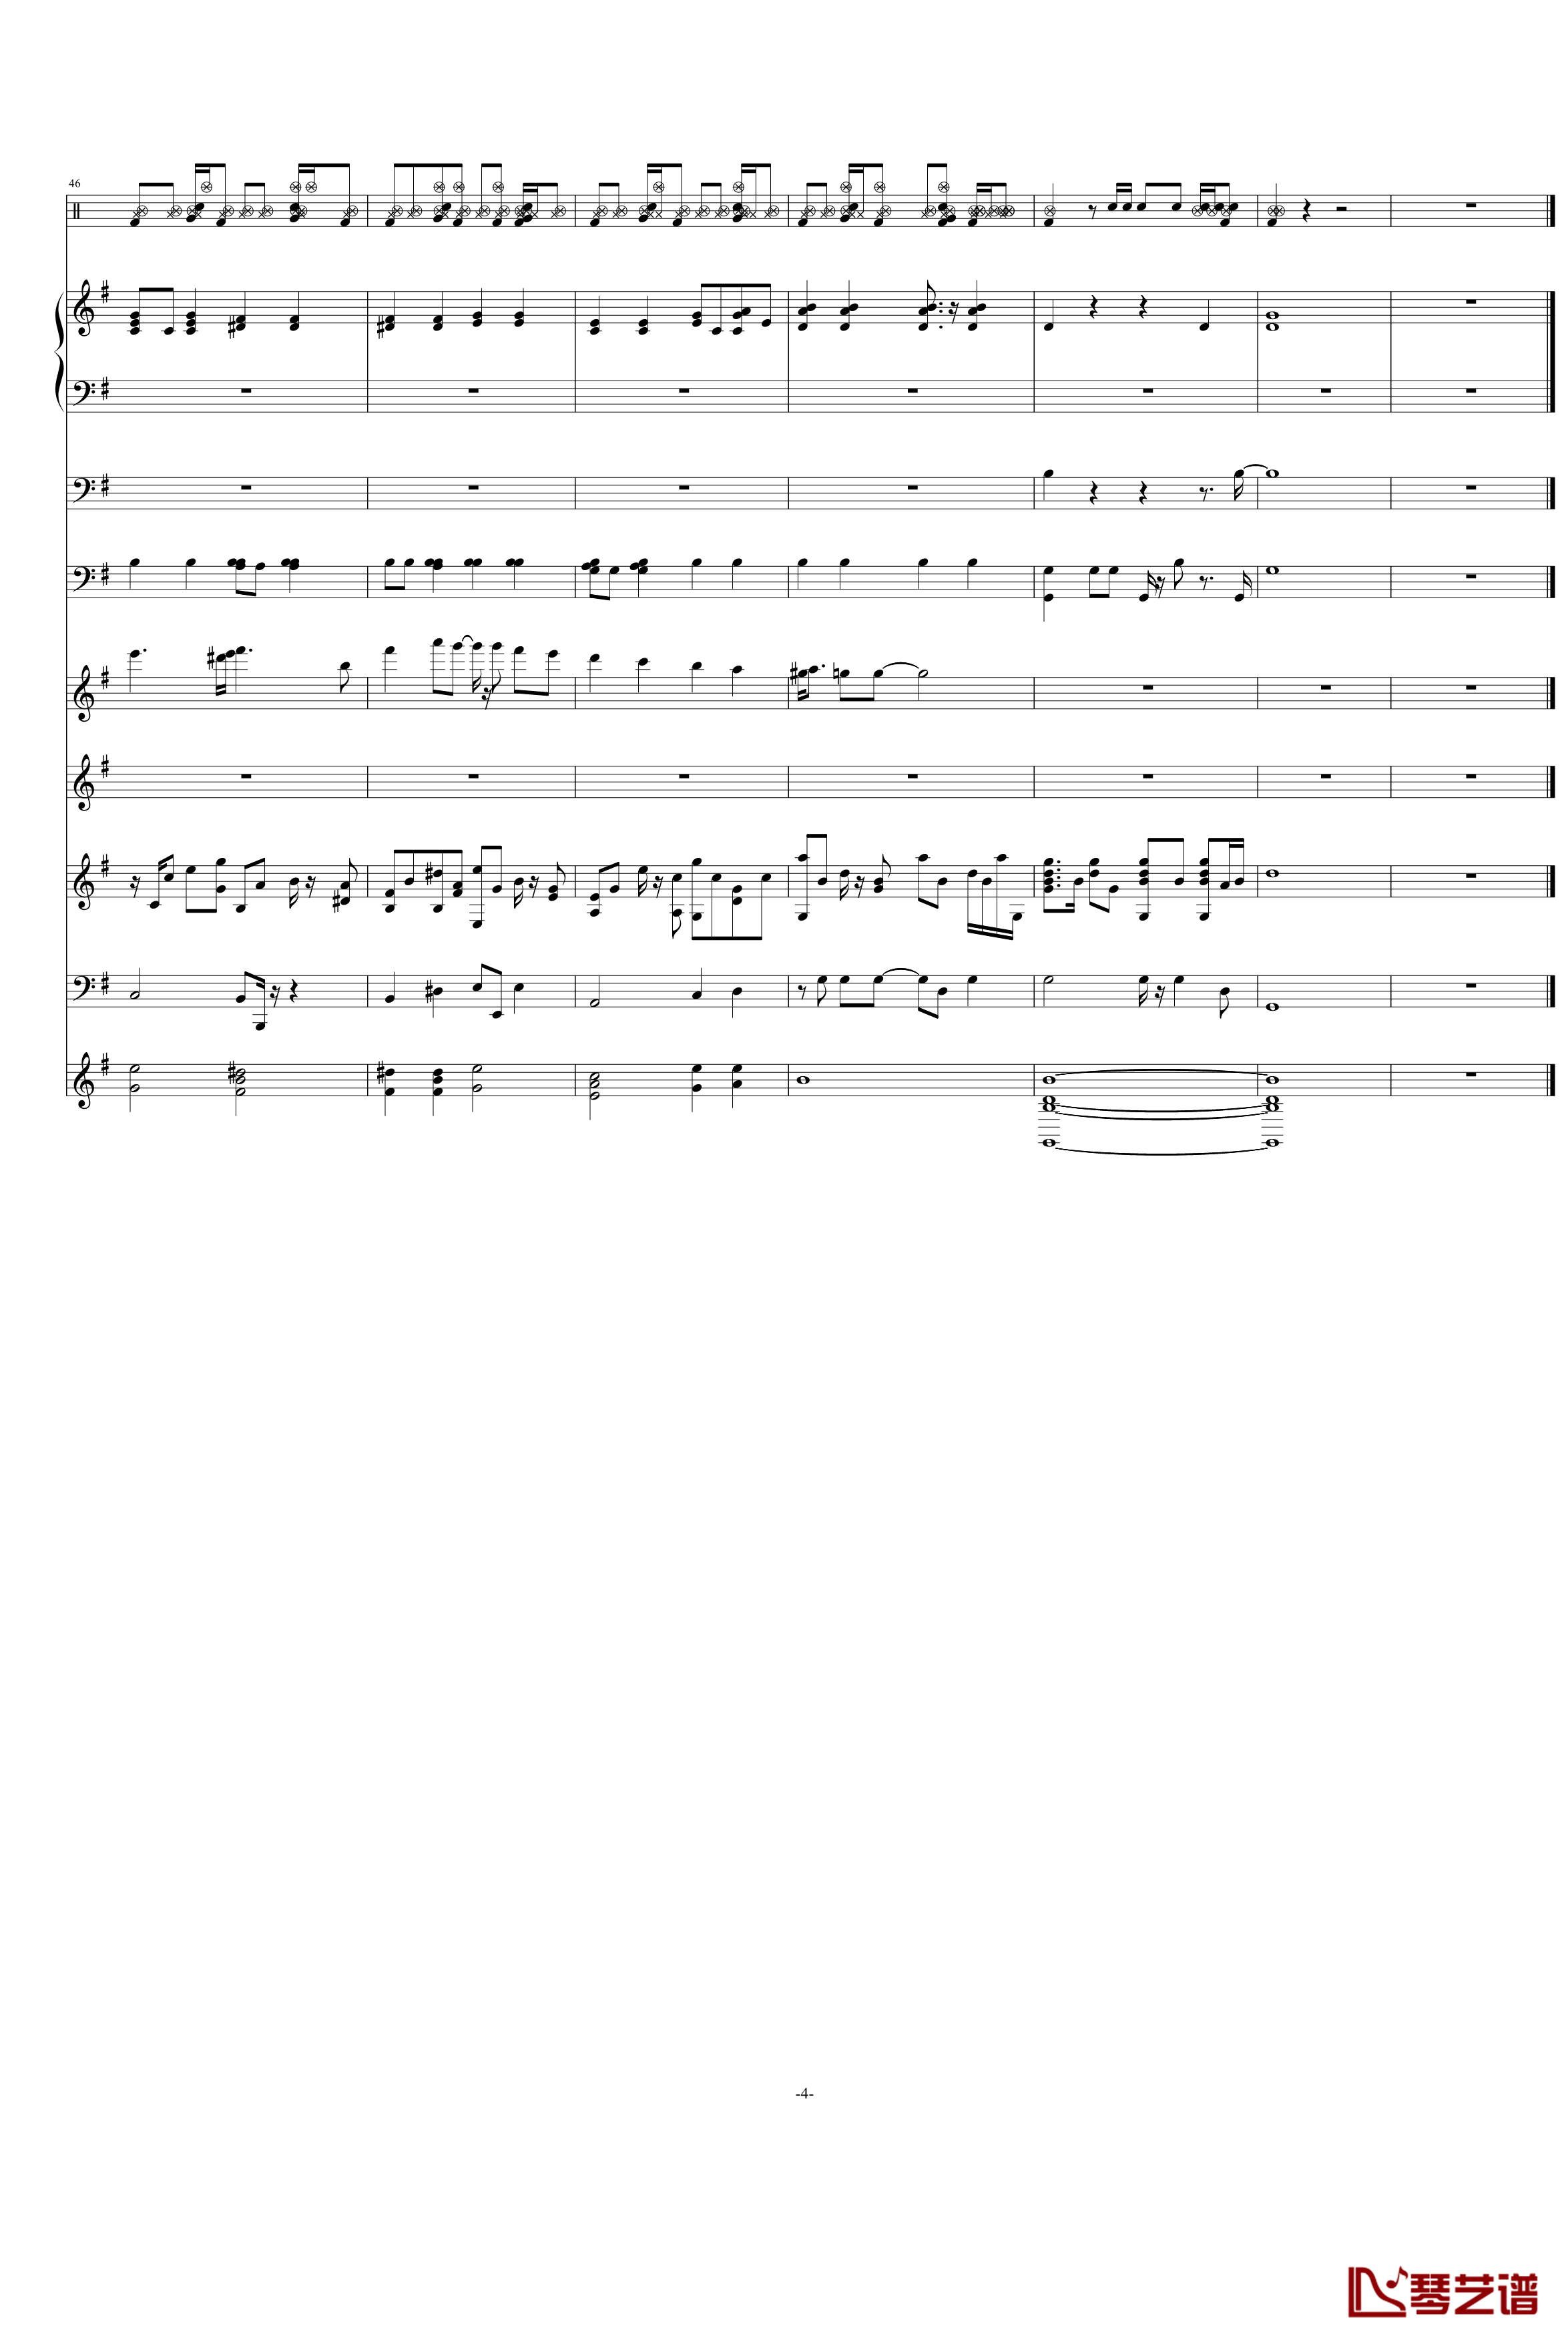 天竺星空钢琴谱-VST重新修改-swenl4